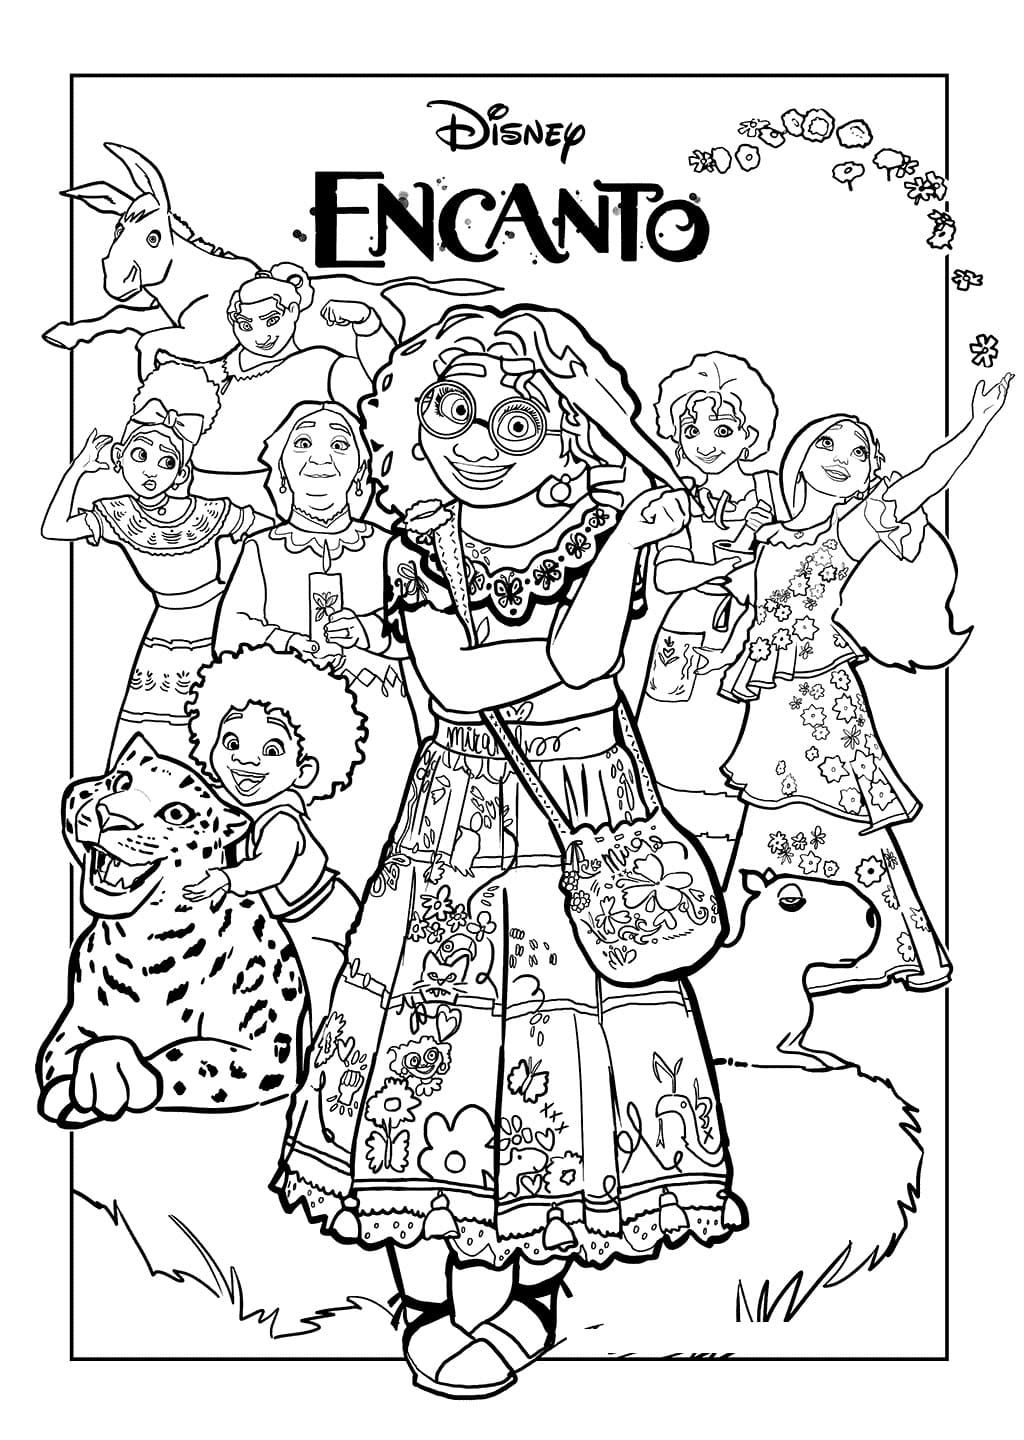 Karakterer fra Encanto fargeleggingsside